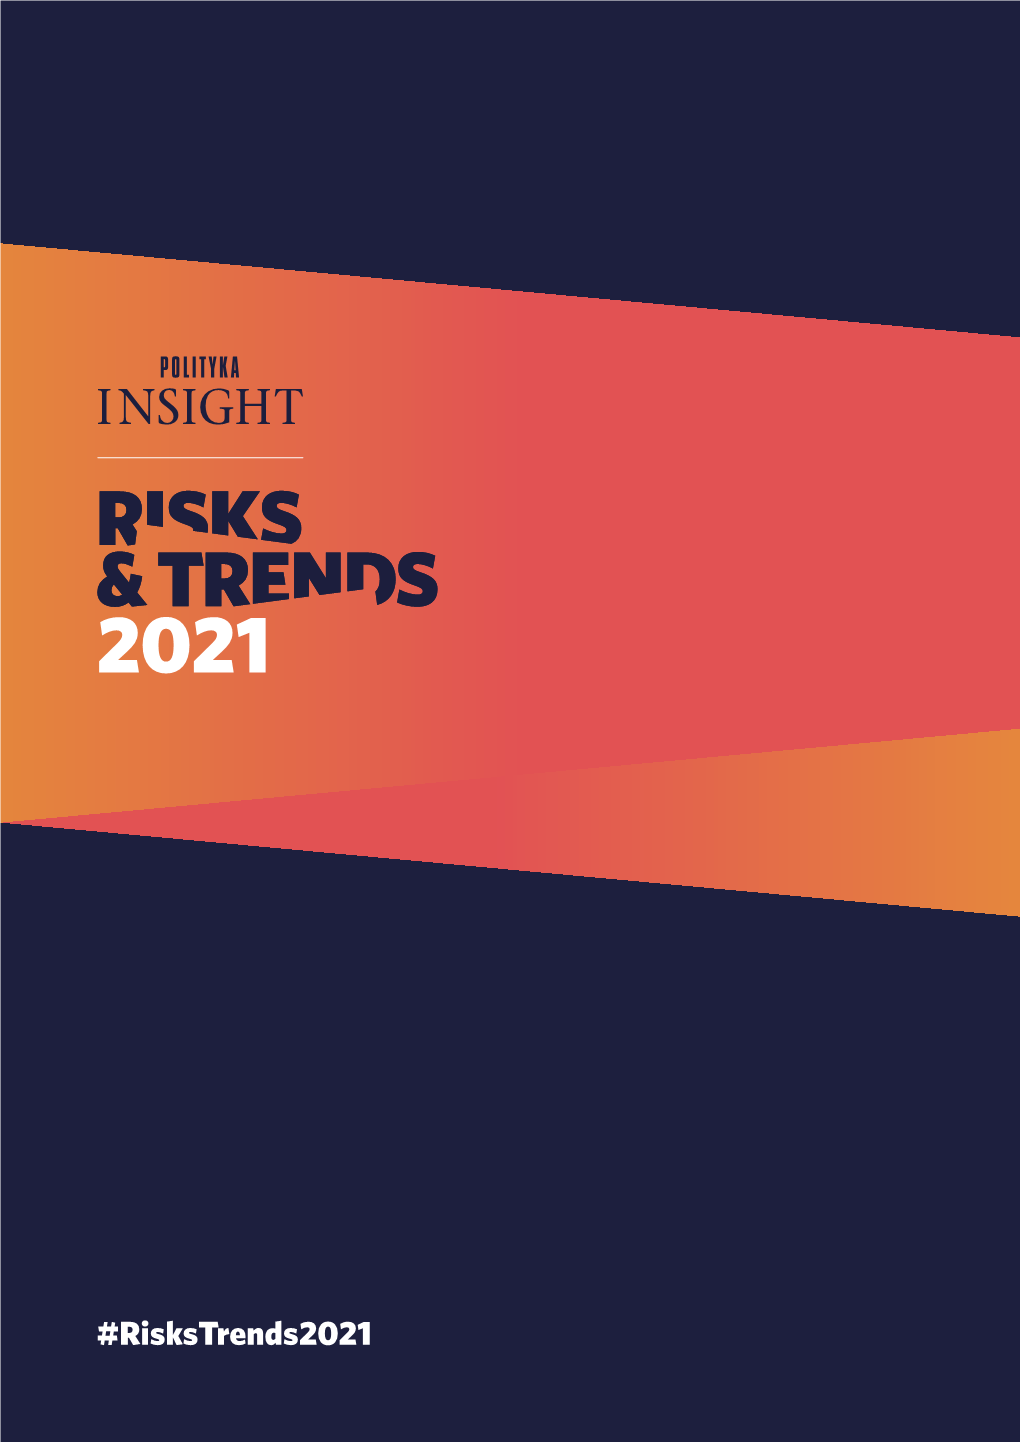 Risks & Trends 2021 26.02.2021 Download